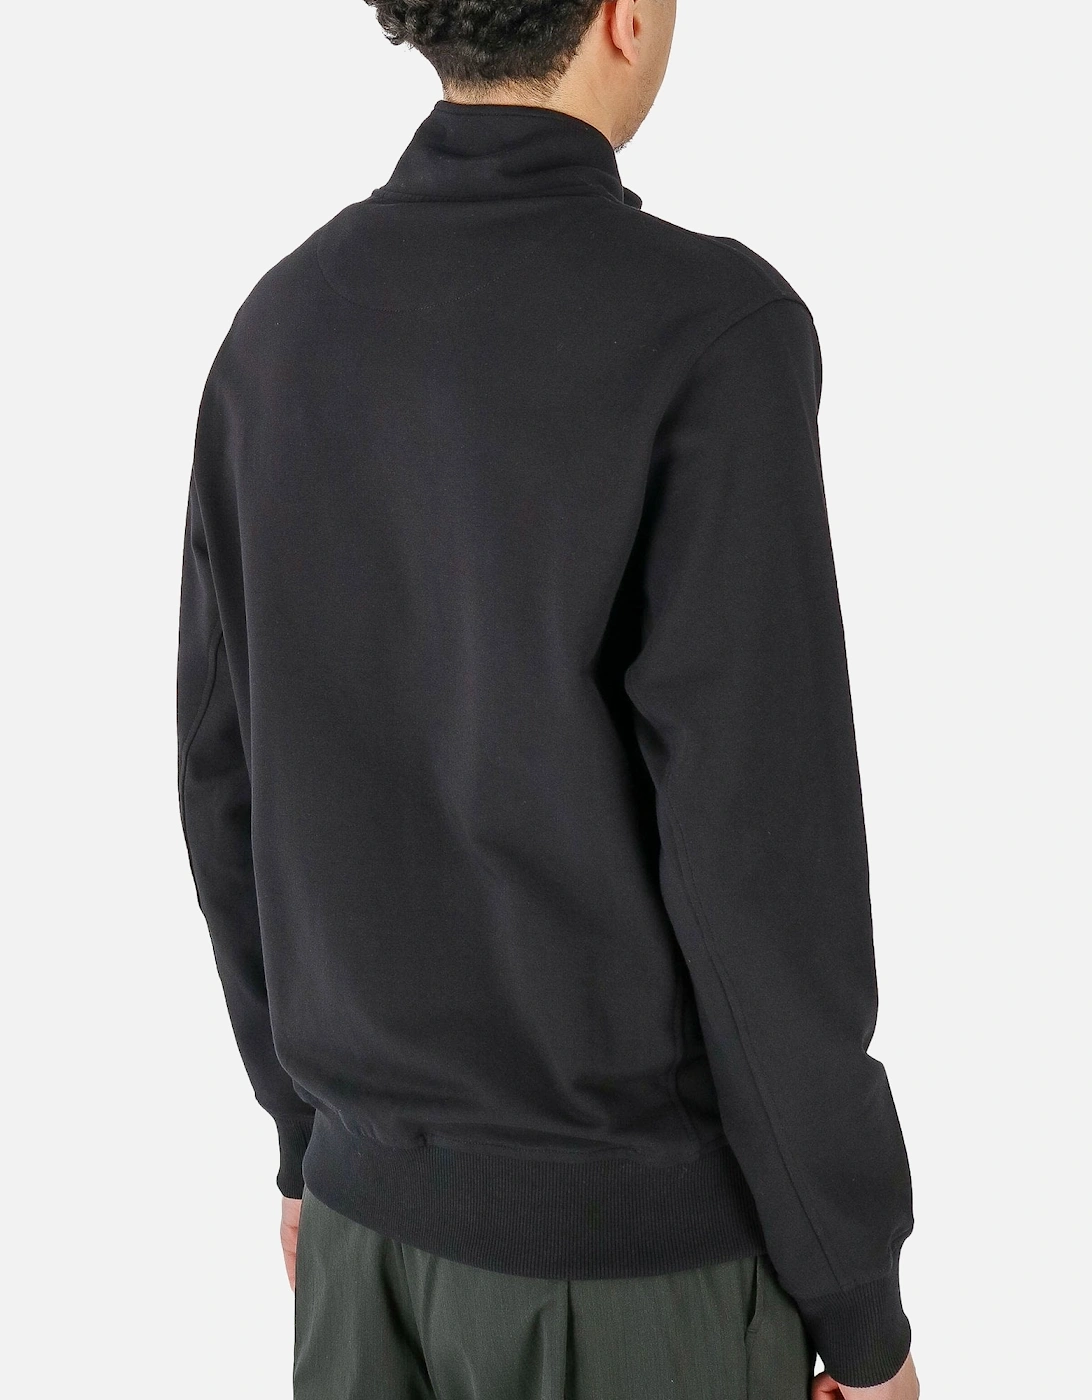 Transit Full Zip Pocket Black Sweatshirt